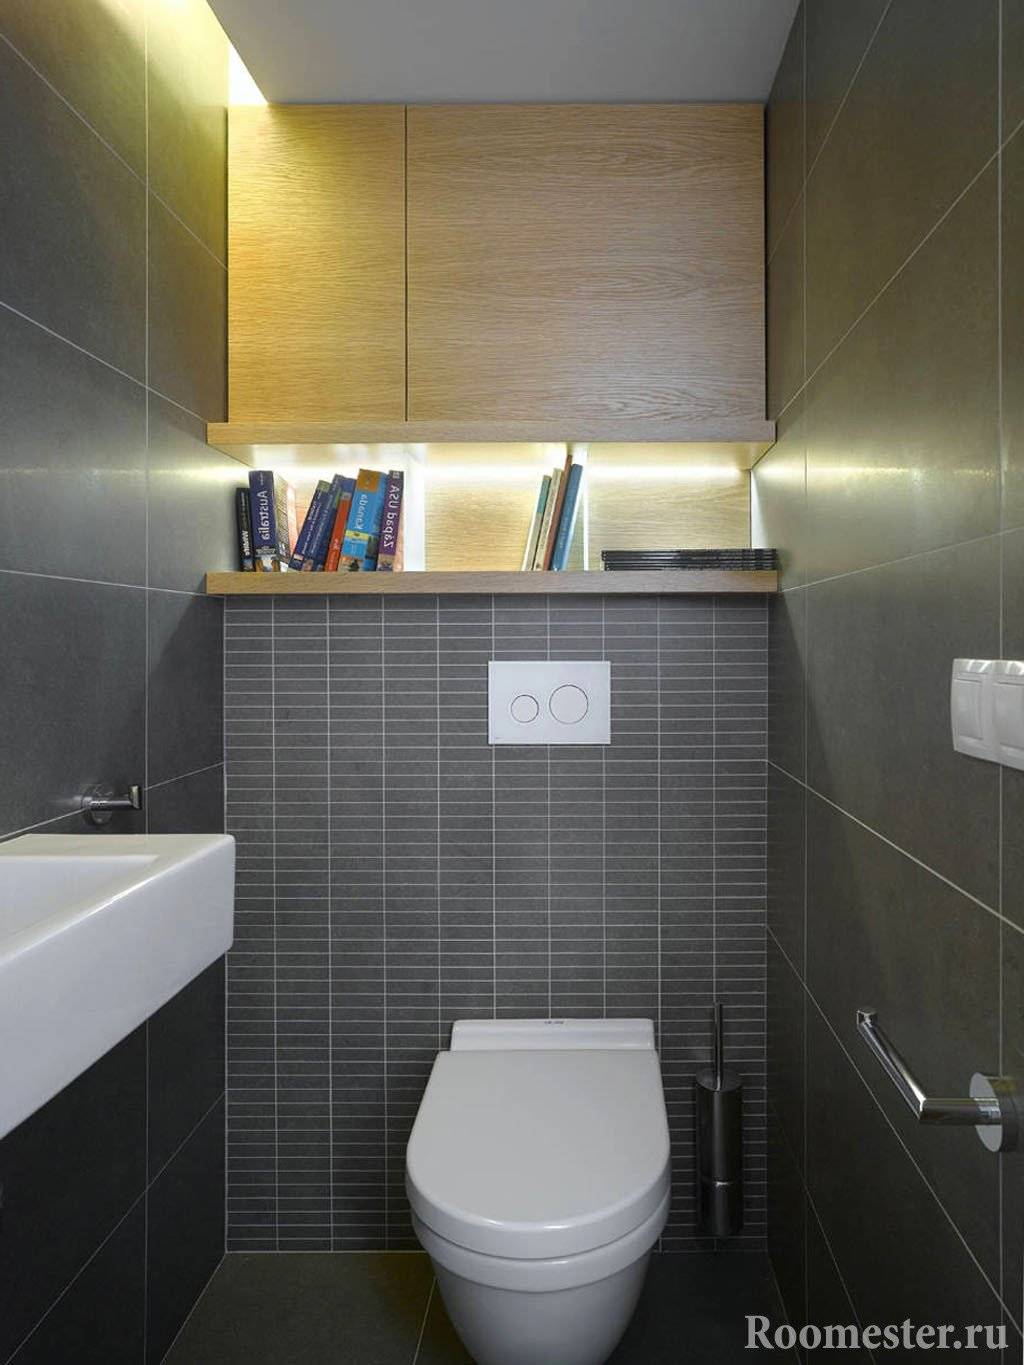 Дизайн туалета в квартире – фото и видео проектов, 9 правил эстетического дизайна